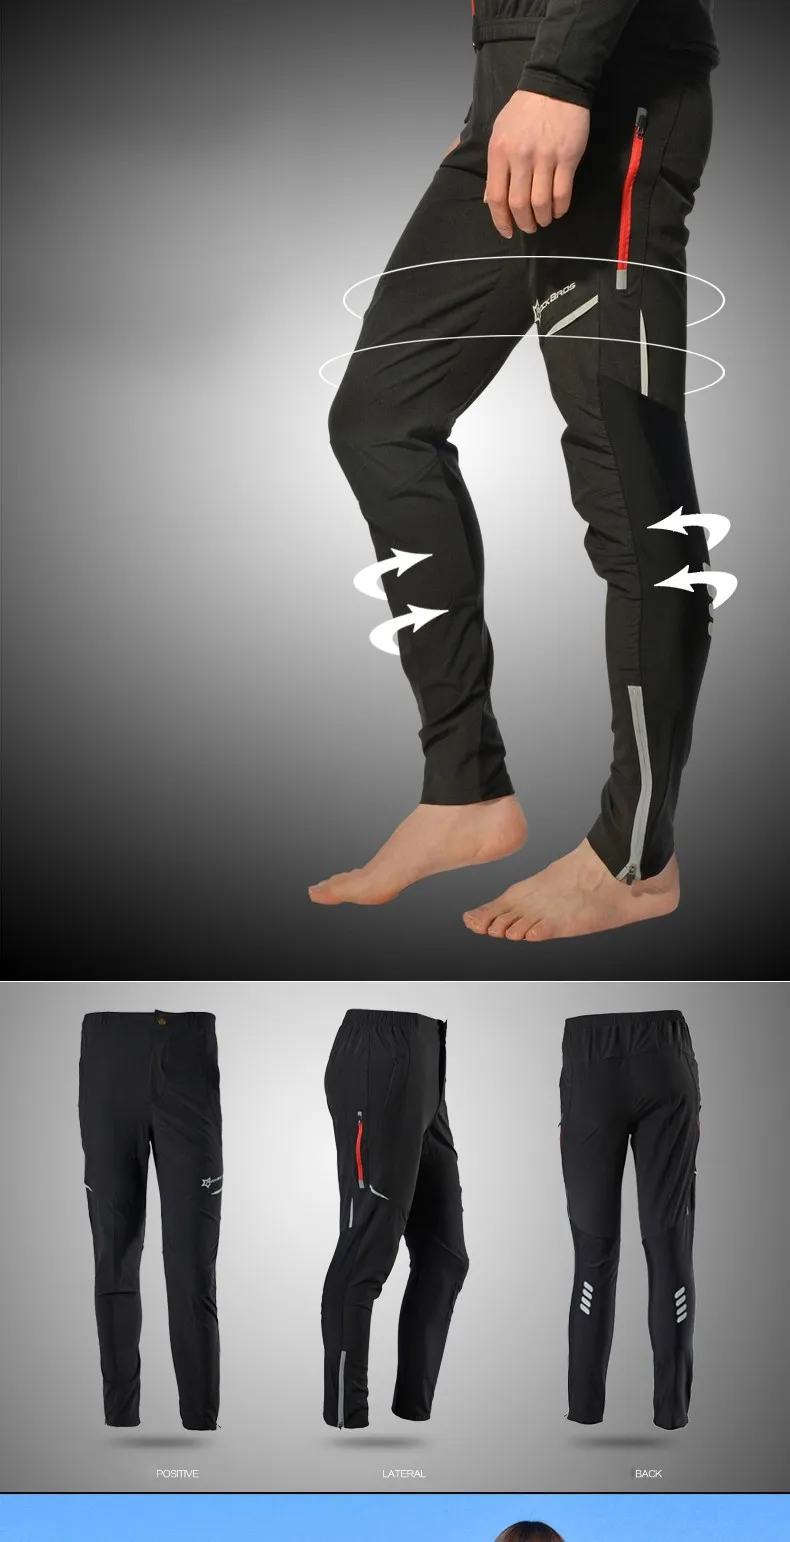 ROCKBROS велосипедные штаны для мужчин и женщин спортивные дышащие летние Светоотражающие штаны для езды на велосипеде, велосипеде, рыбалки, фитнеса